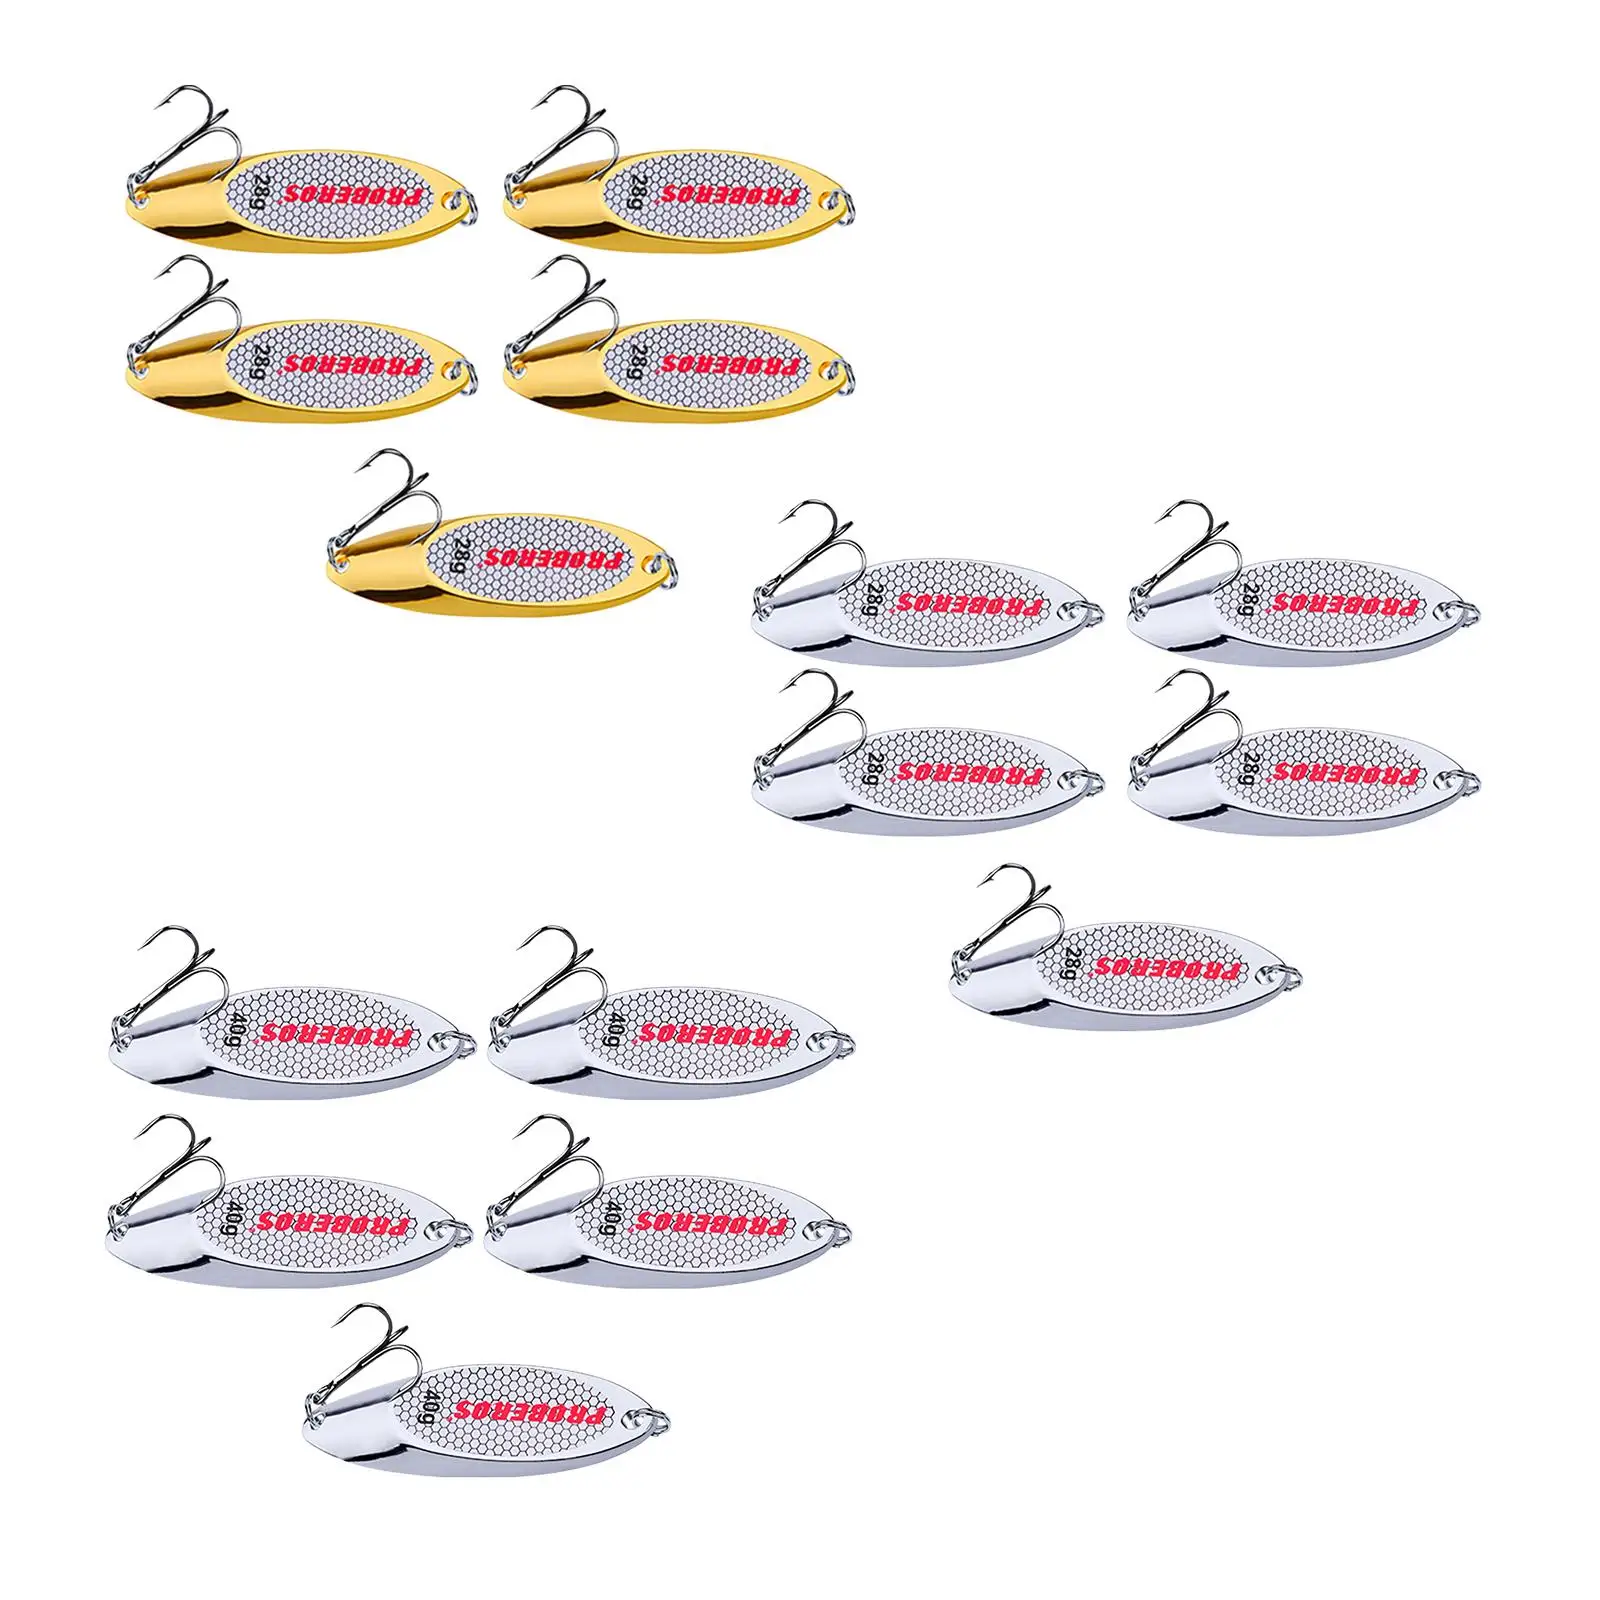 5x Рыболовных ложек, приманок, жестких рыболовных приманок для заброса на большие расстояния, пресноводных 28 г